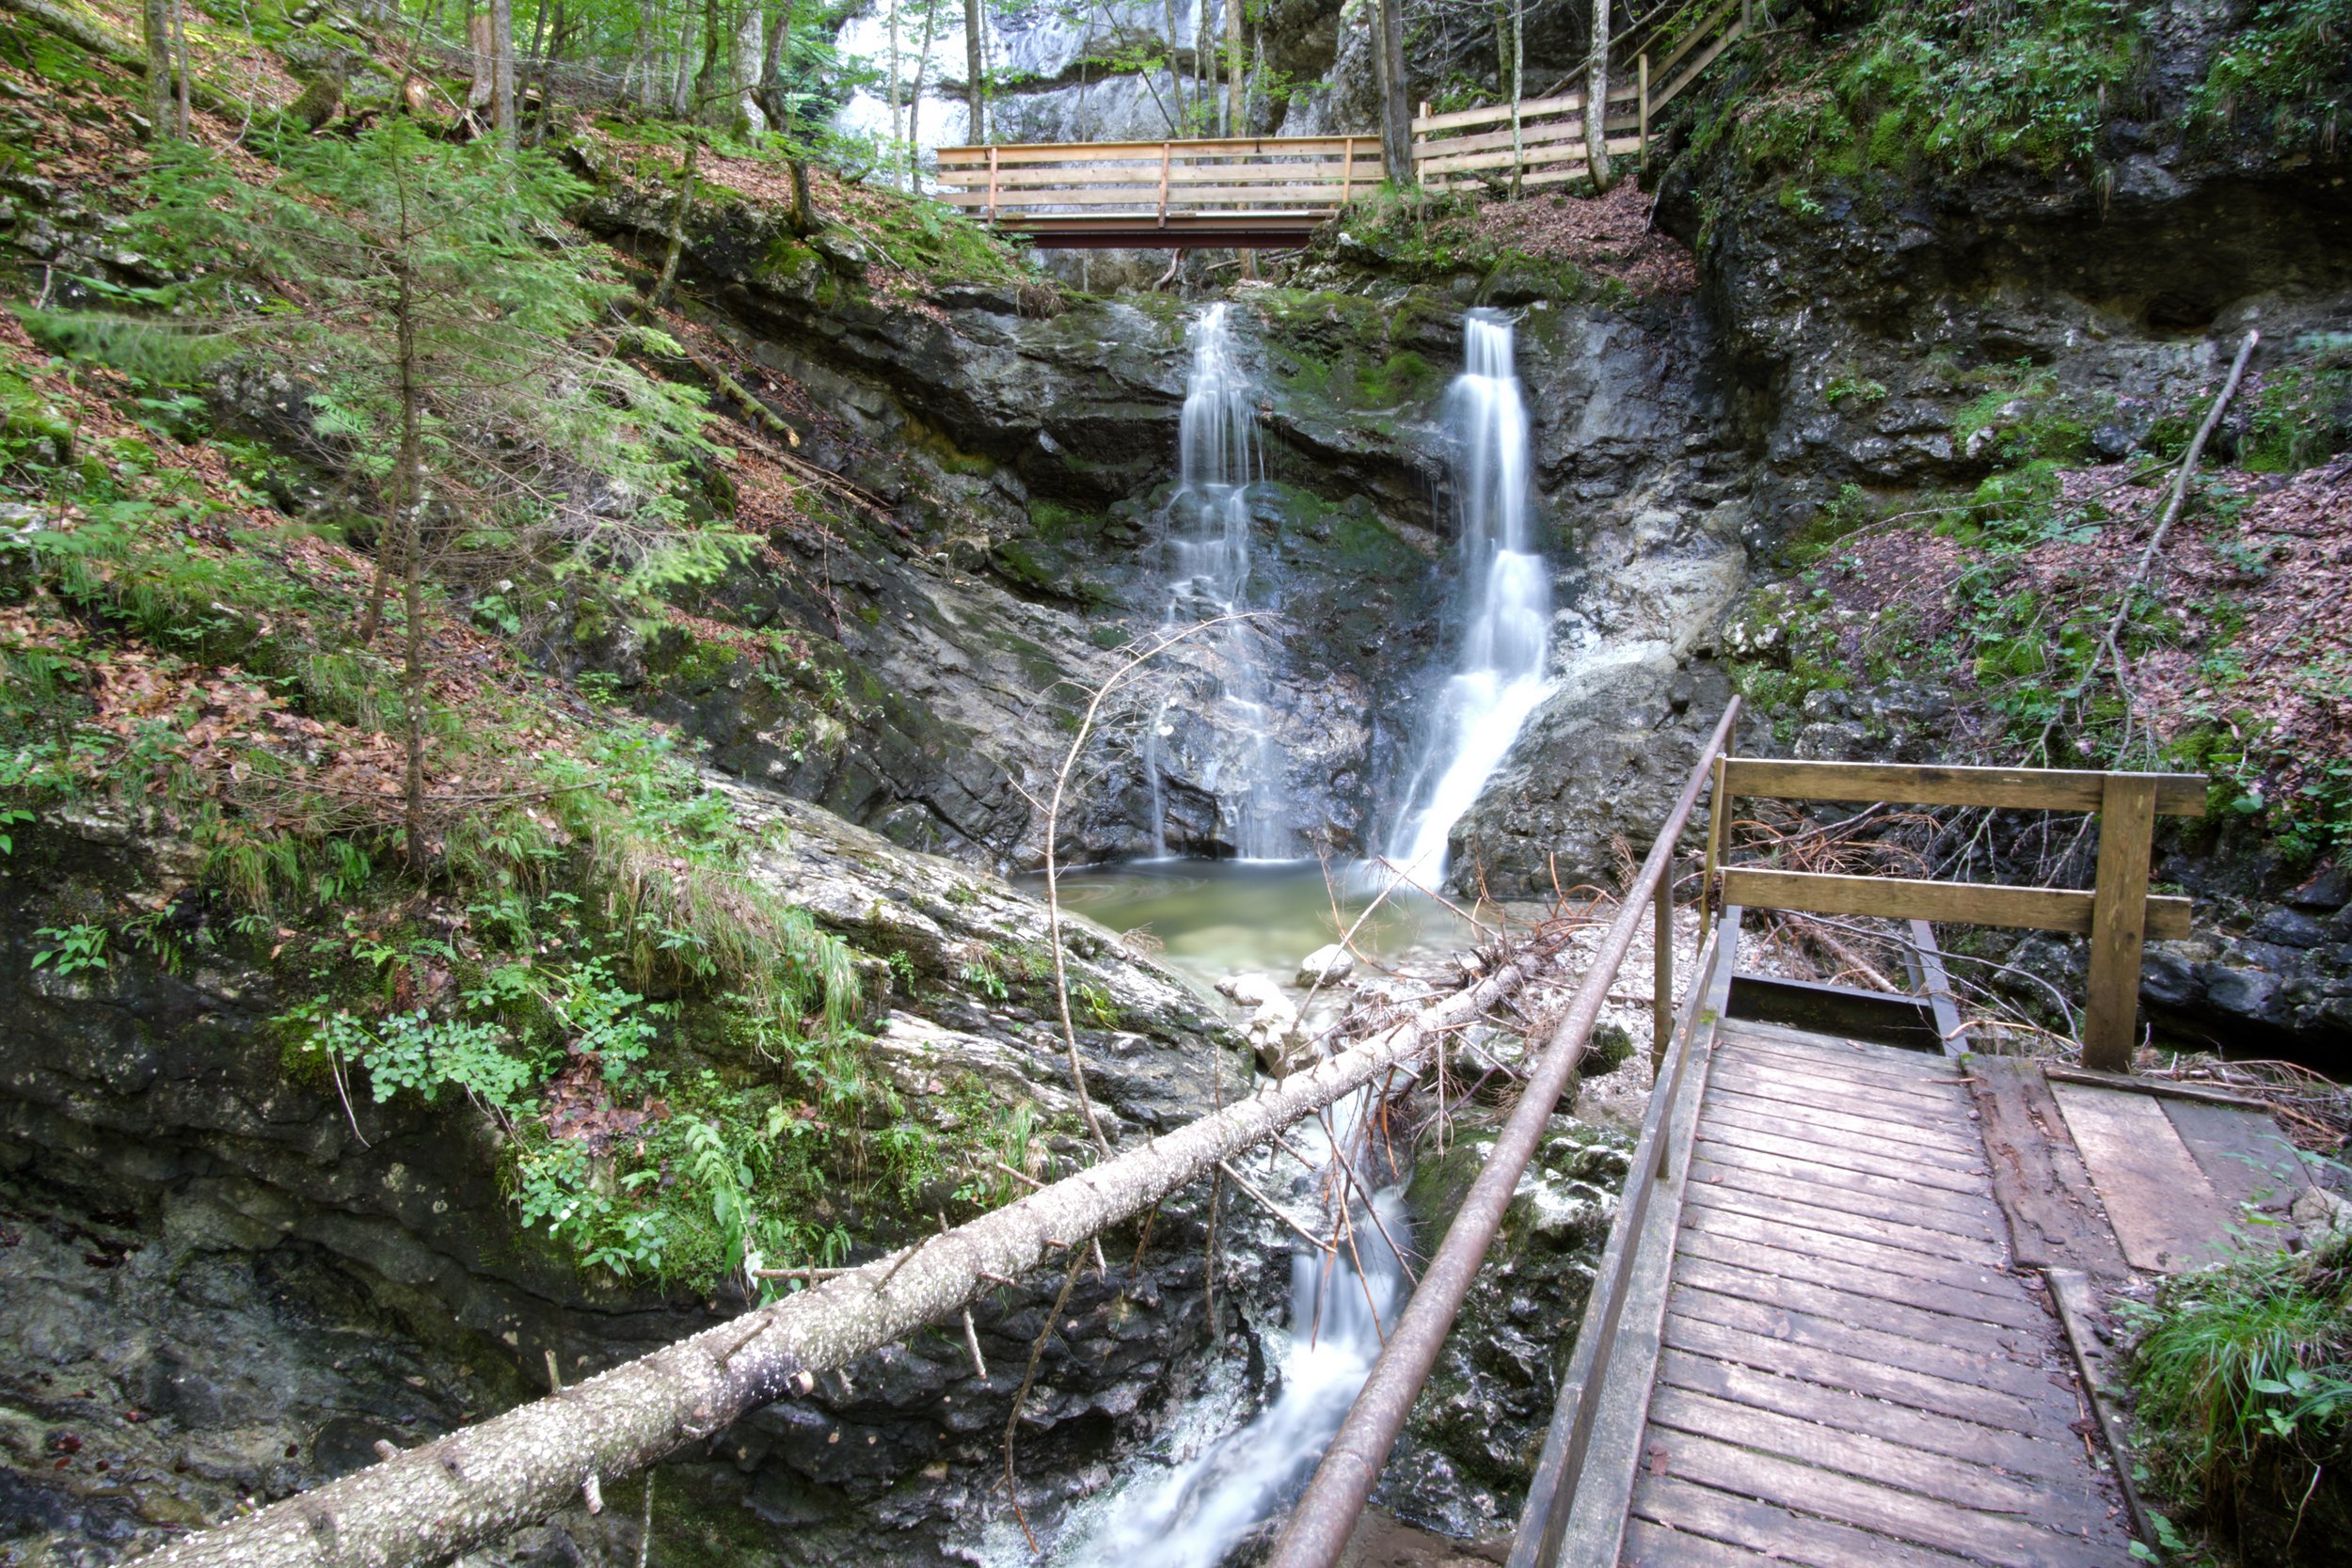 Hiking trail through the Klausenbach gorge